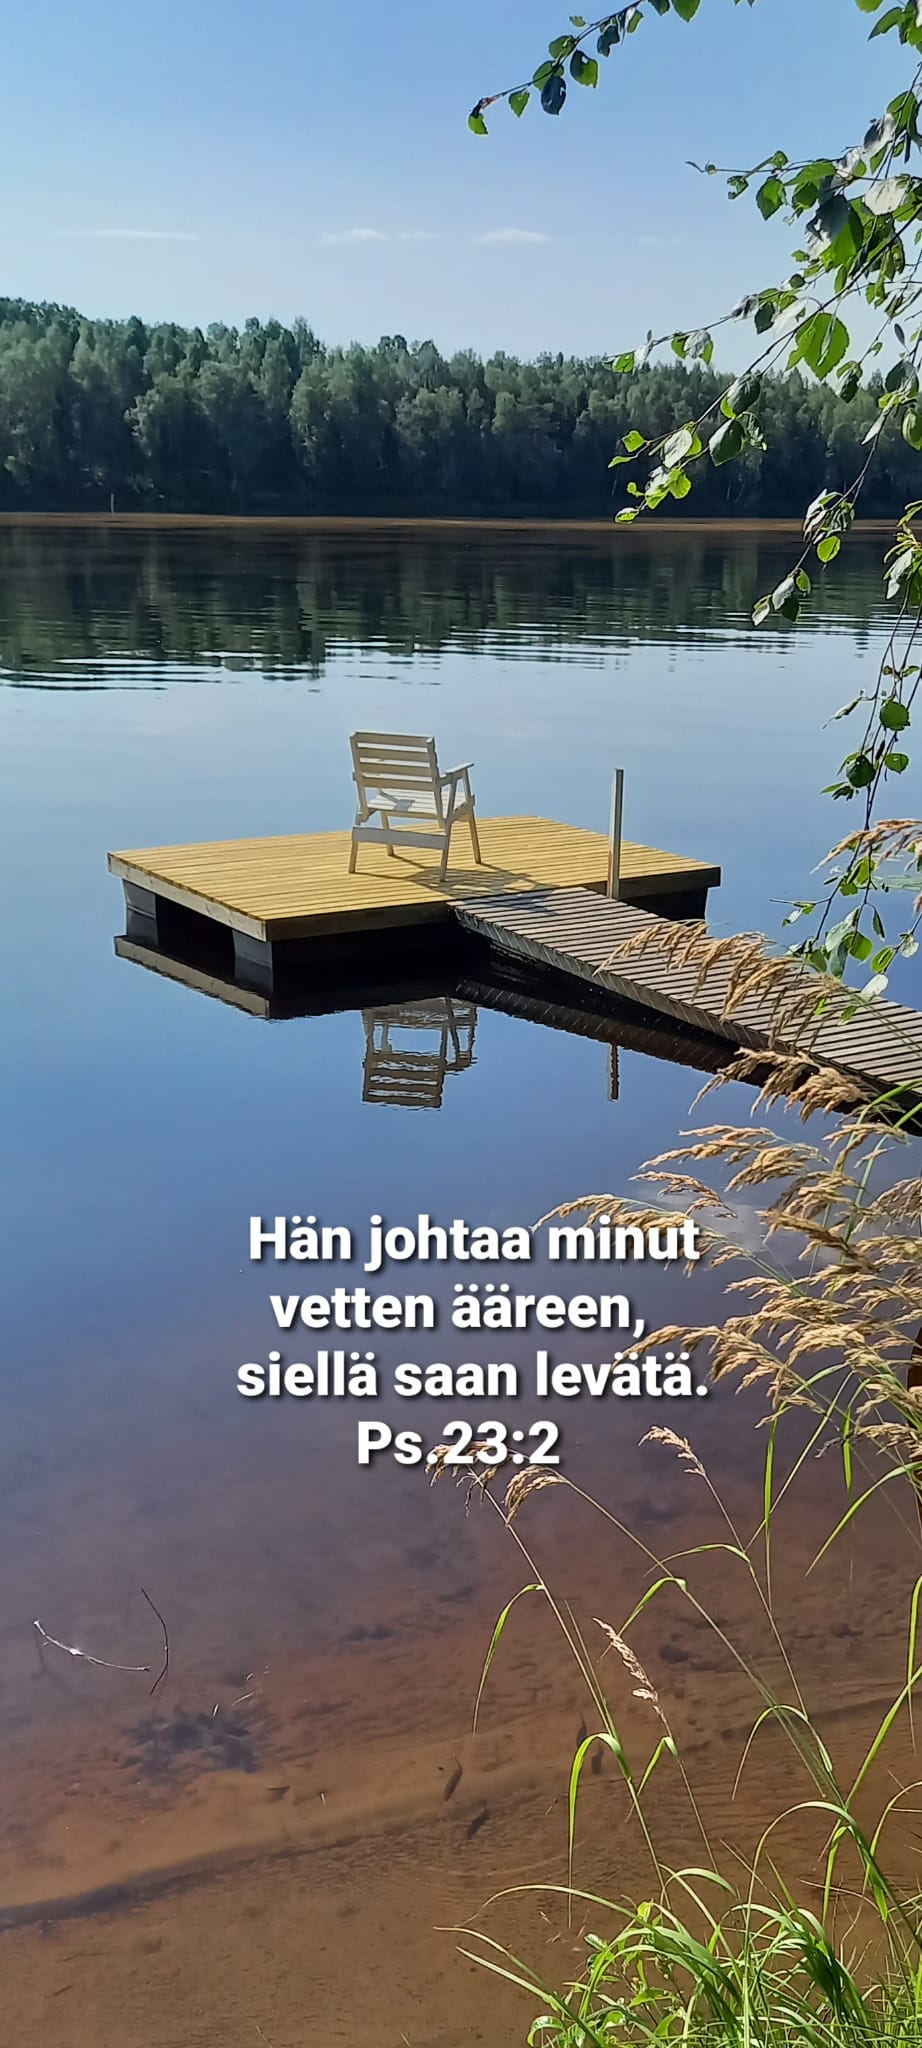 valoisa järvimaisema, jossa tuoli laiturilla ja teksti "Hän johtaa minut vetten äärelle, siellä saan levätä."